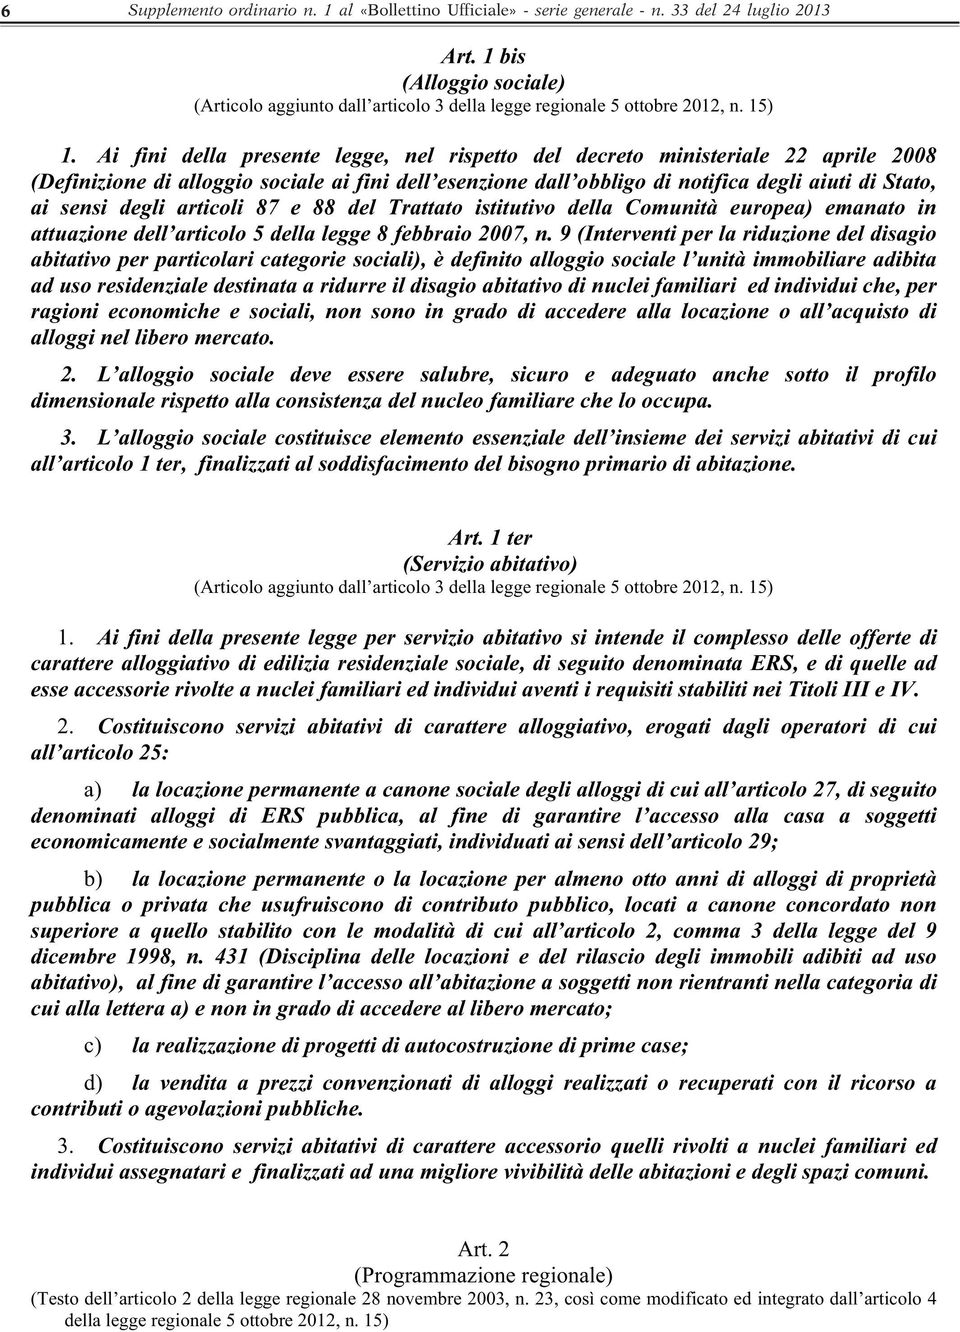 Ai fini della presente legge, nel rispetto del decreto ministeriale 22 aprile 2008 (Definizione di alloggio sociale ai fini dell esenzione dall obbligo di notifica degli aiuti di Stato, ai sensi